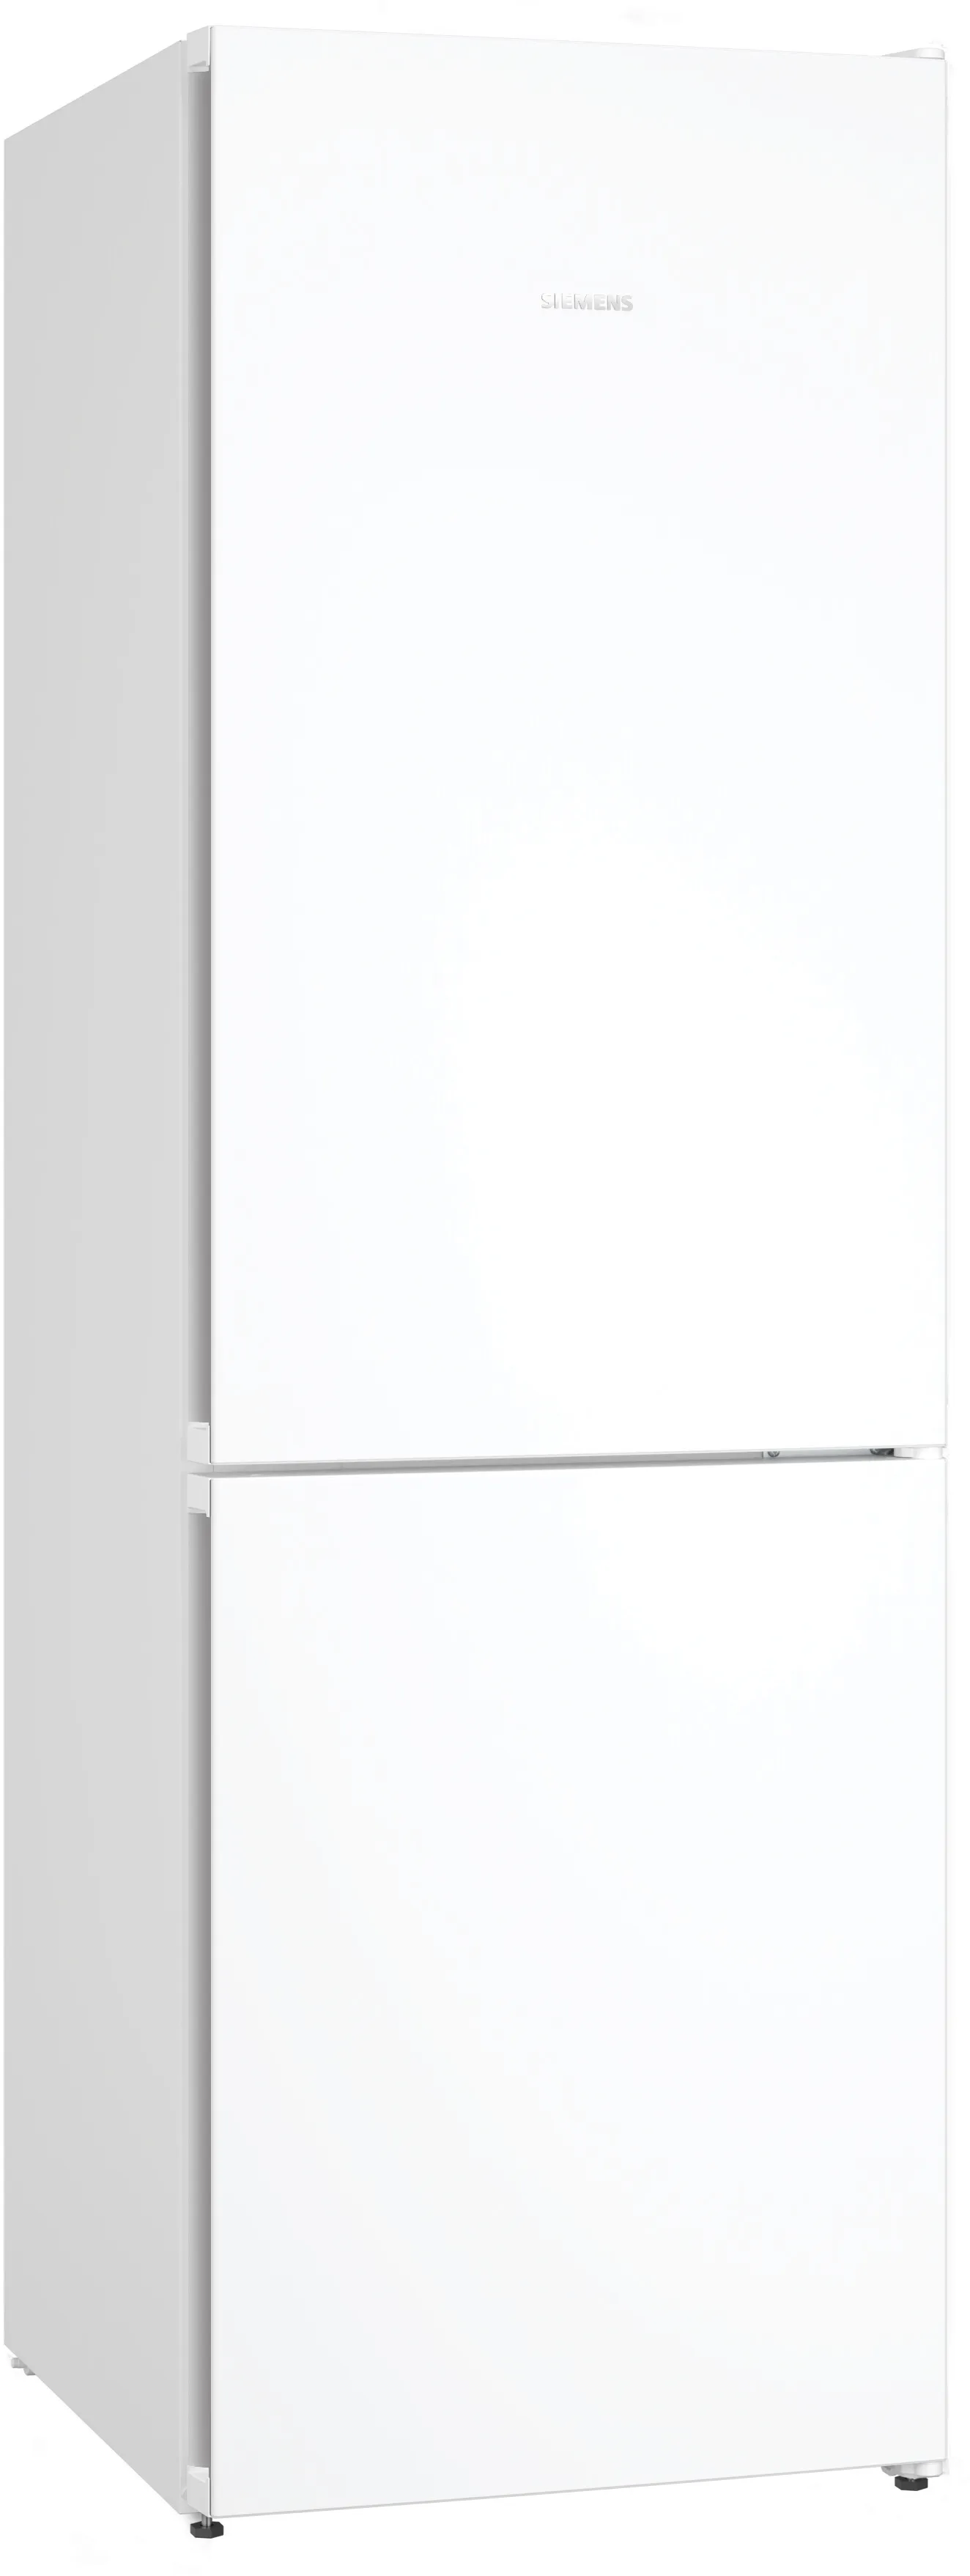 iQ300 Freistehende Kühl-Gefrier-Kombination mit Gefrierbereich unten 186 x 60 cm Weiß 